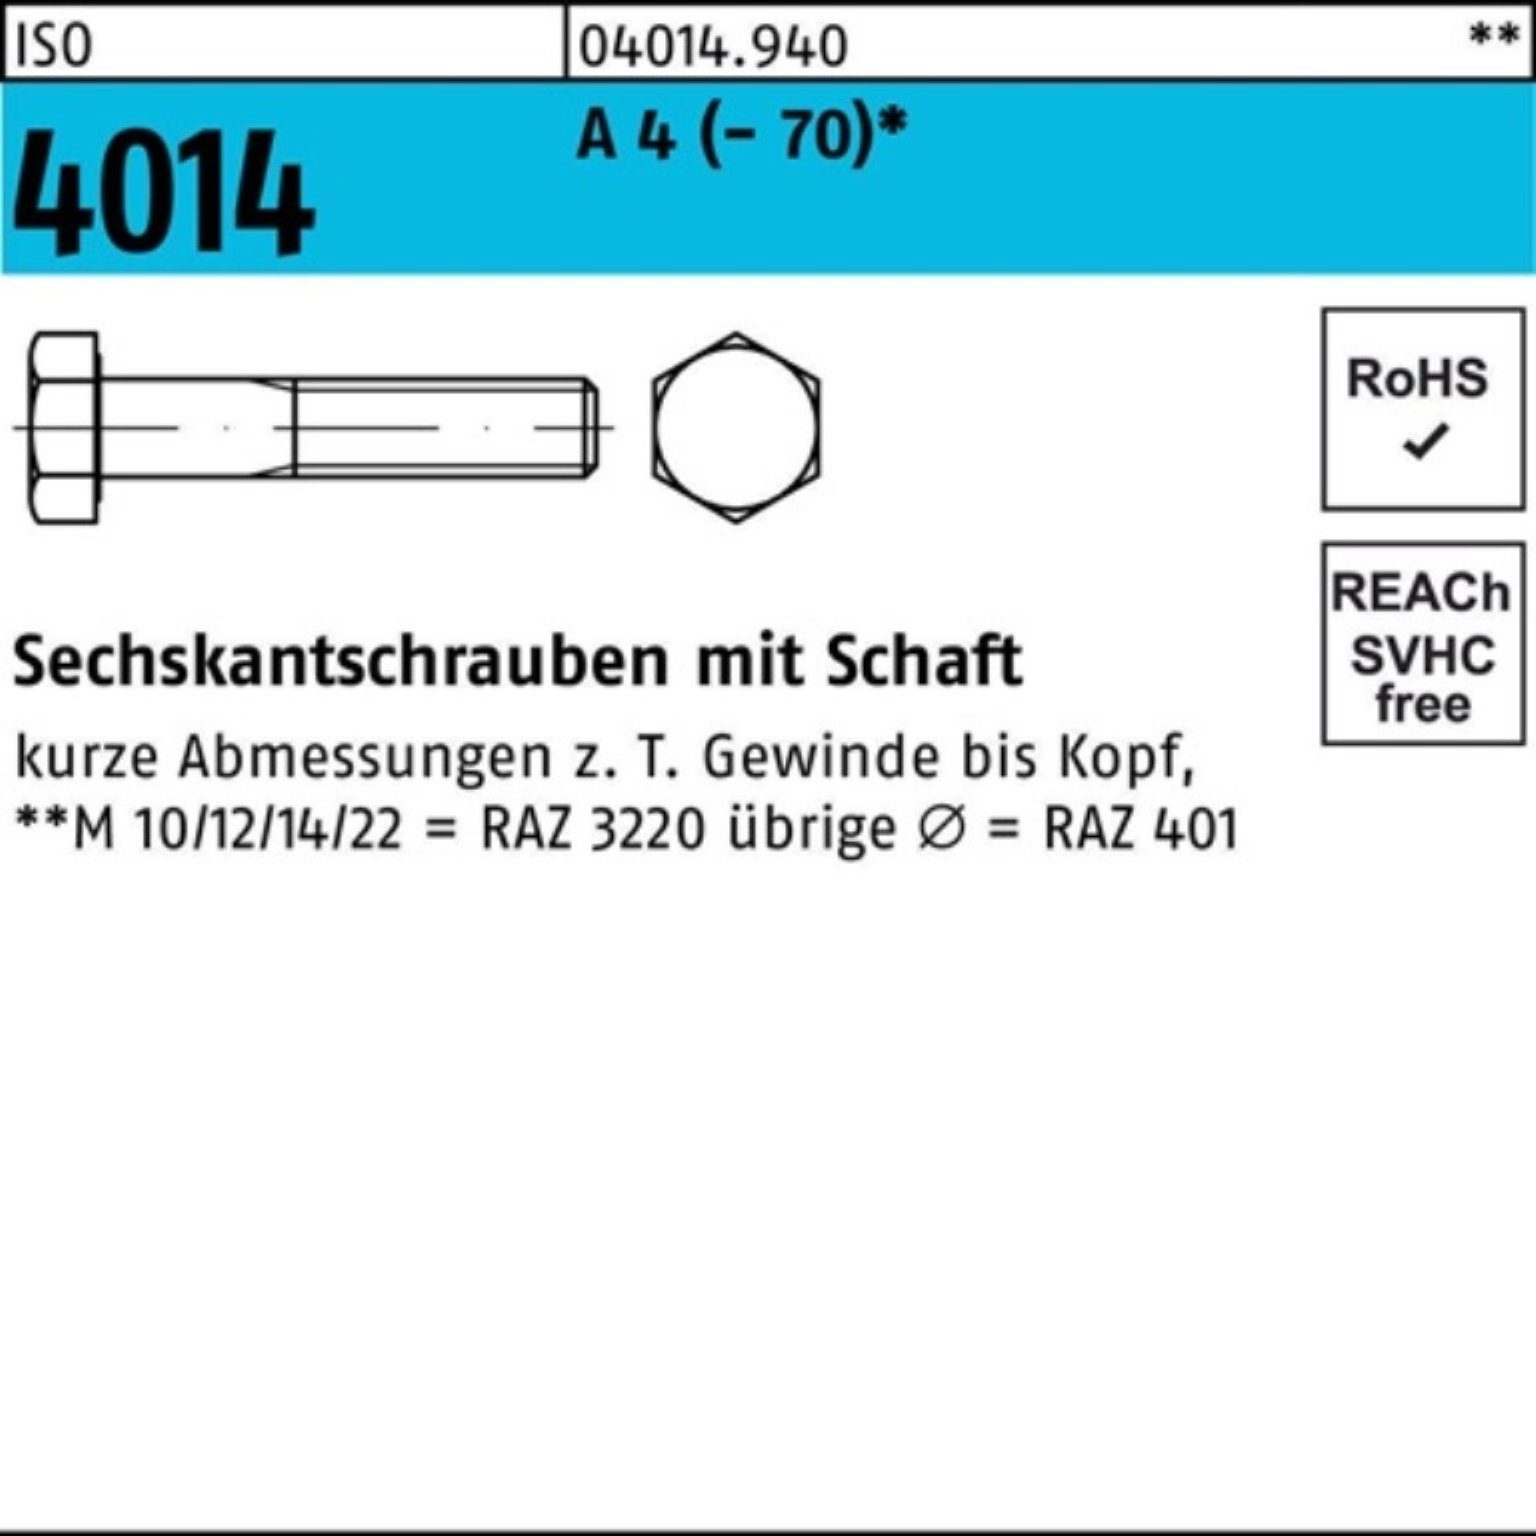 Bufab Sechskantschraube 100er Pack Sechskantschraube ISO 4014 Schaft M5x 30 A 4 (70) 100 St